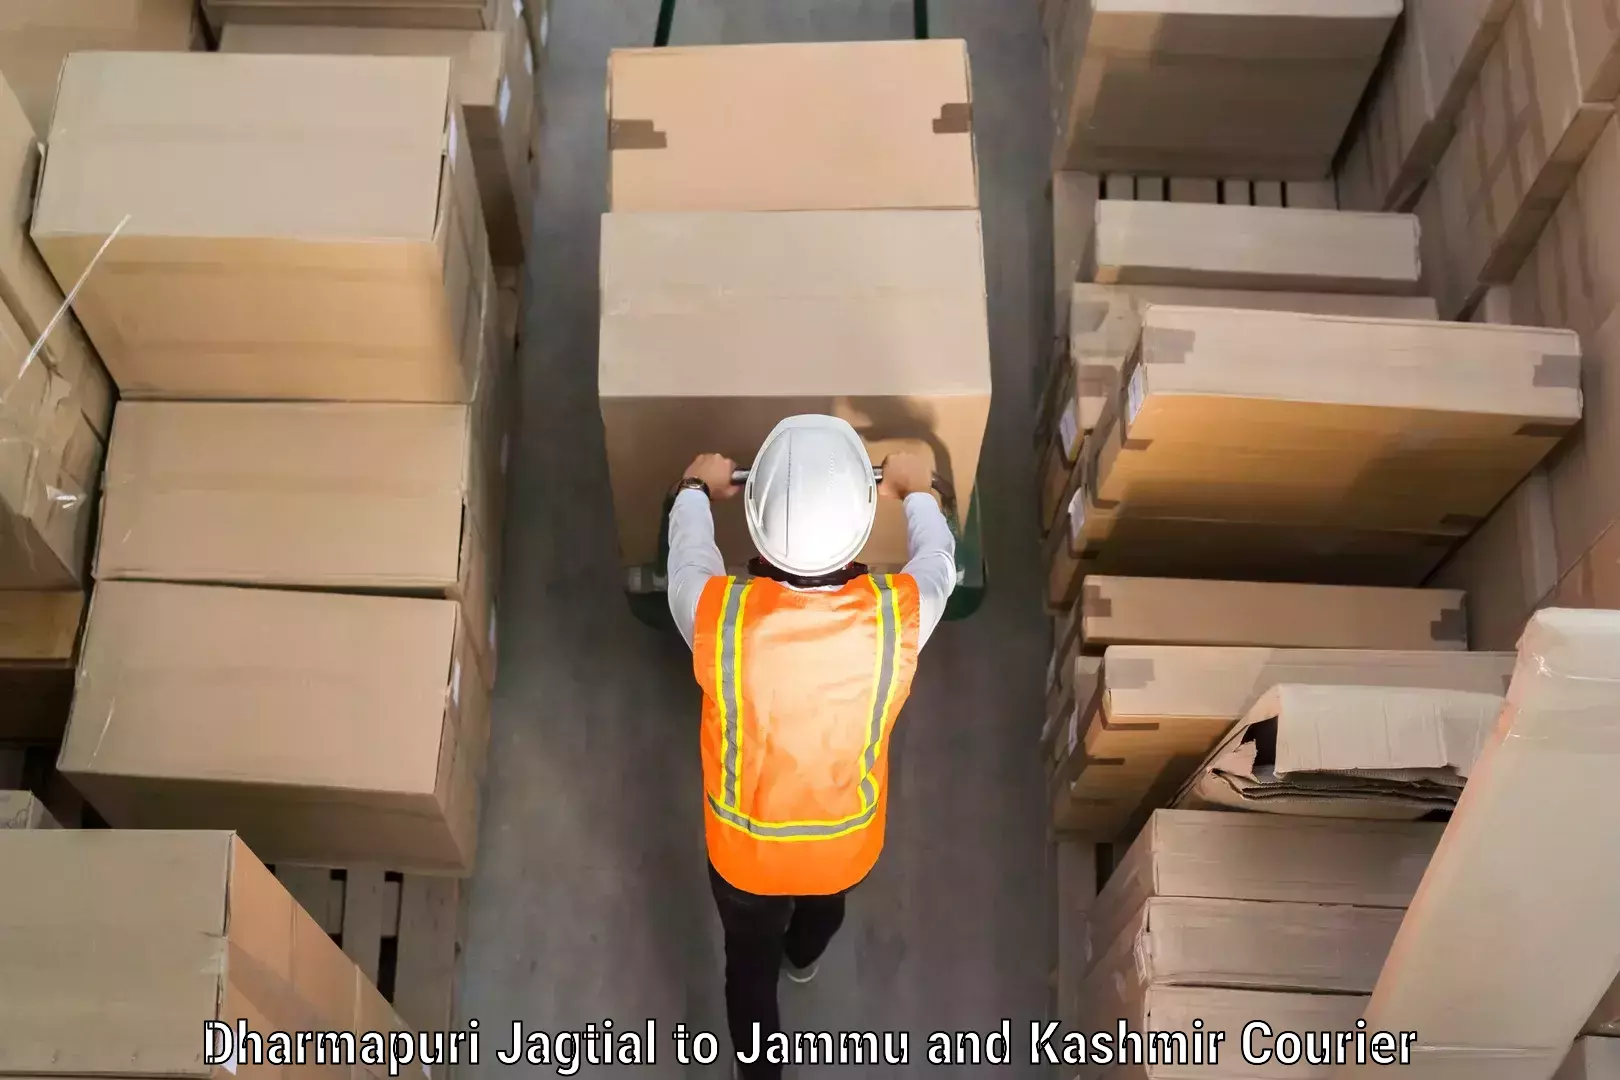 Luggage delivery providers Dharmapuri Jagtial to Kargil